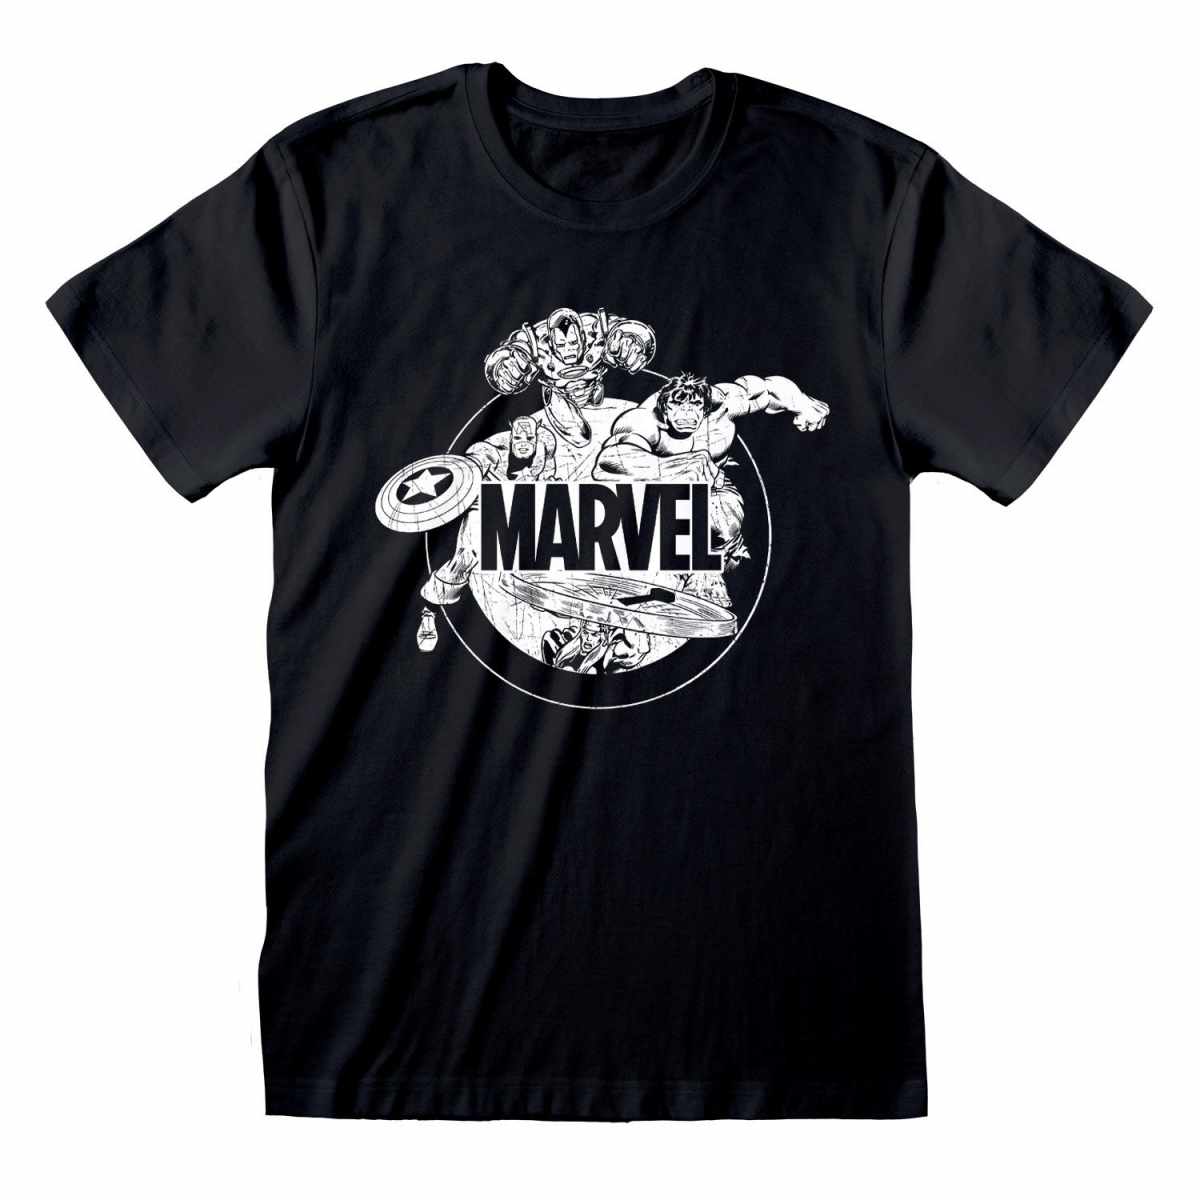 Marvel Comics Comics Characters T-Shirt